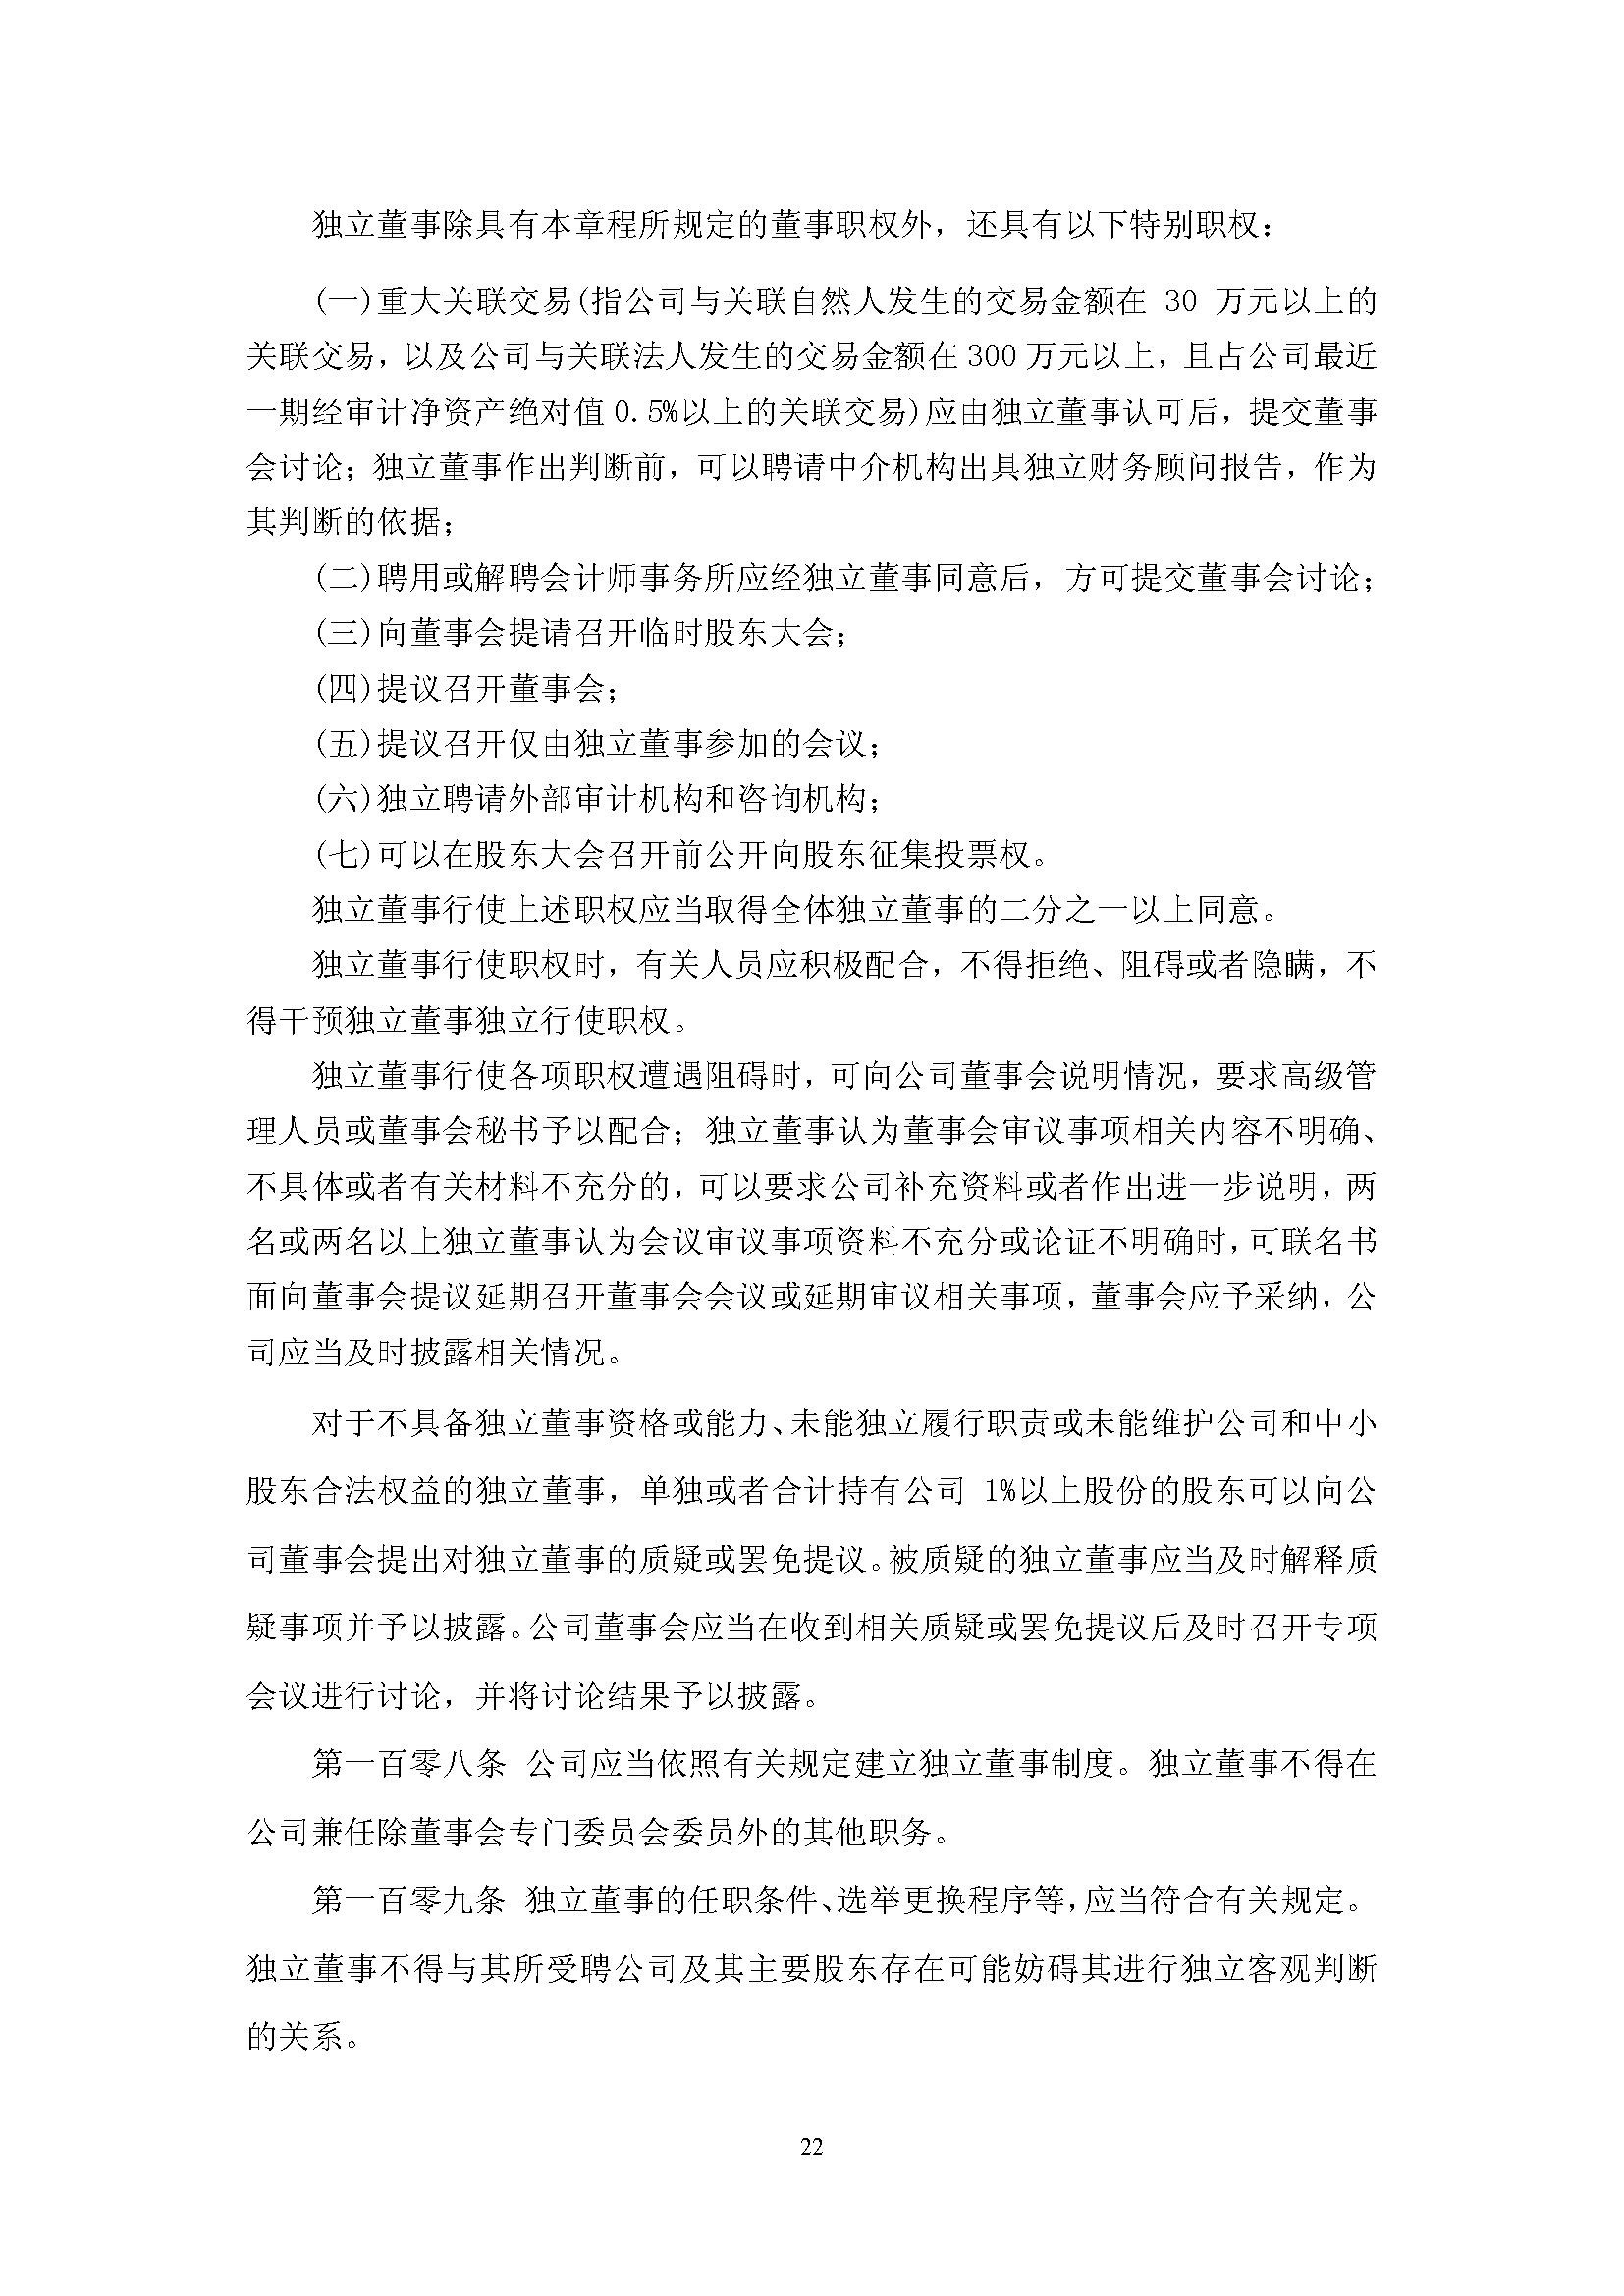 宜华生活公司章程(2019-5-31)_页面_22.png